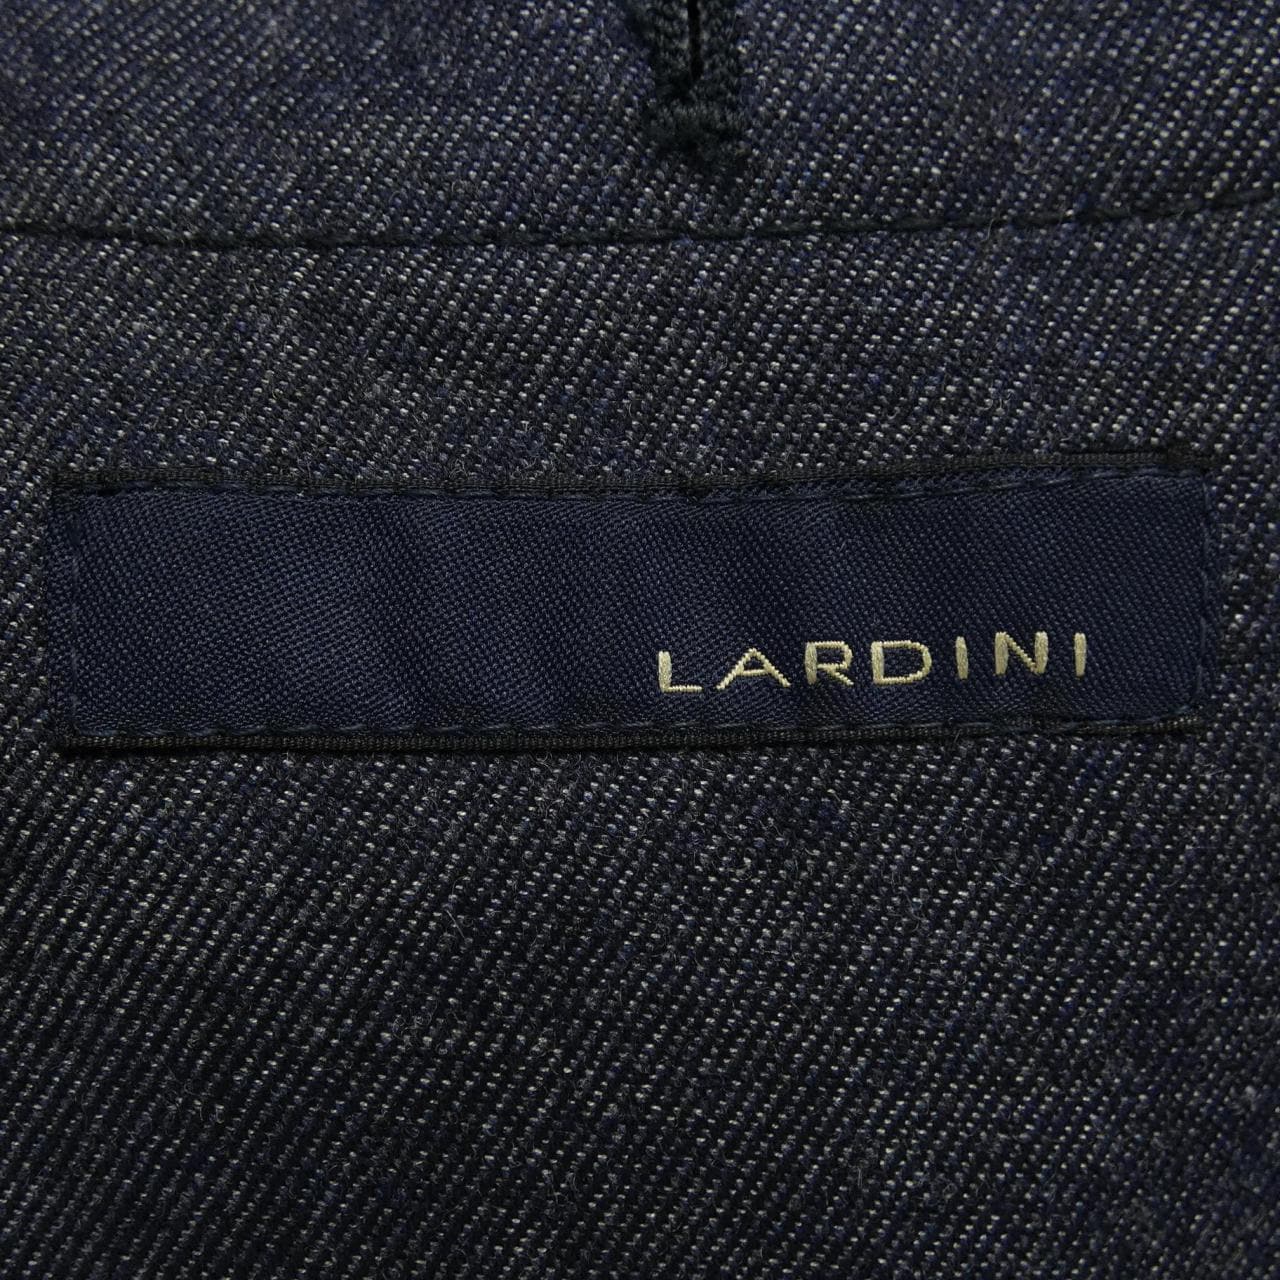 LARDINI tailored jacket